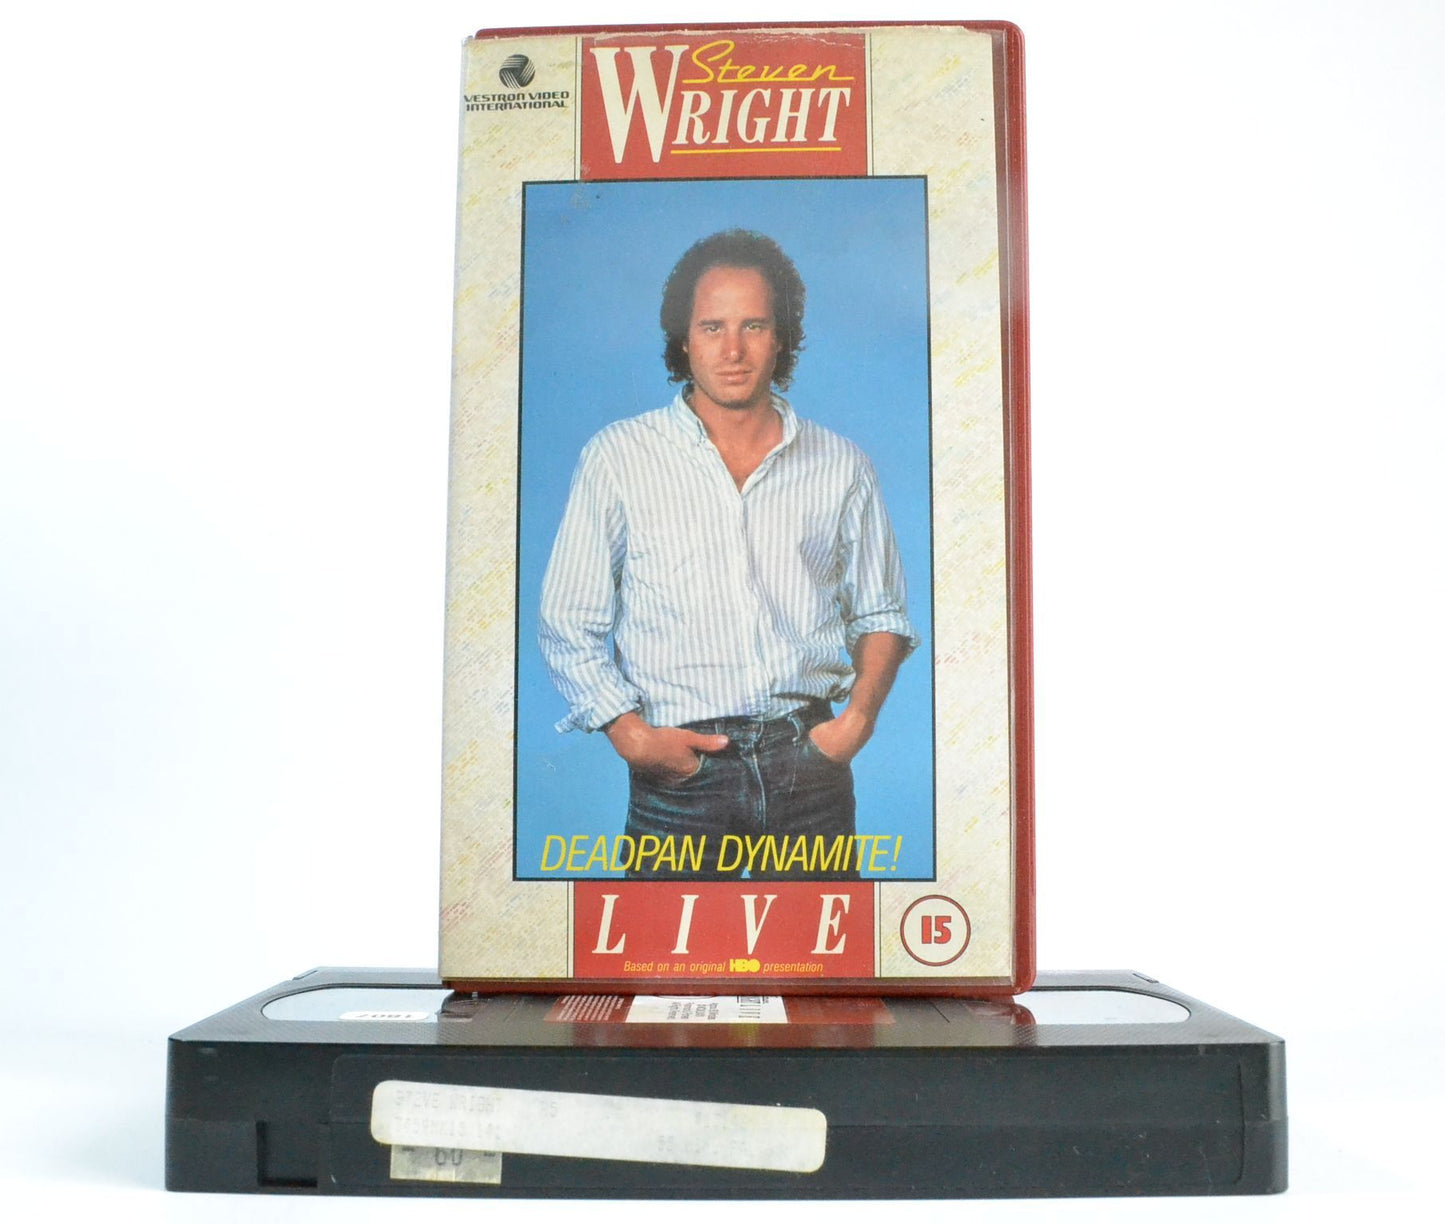 Steven Wright: “Deadpan Dynamite!” - Vestron Pre-Cert - Monotone Comedy - VHS-